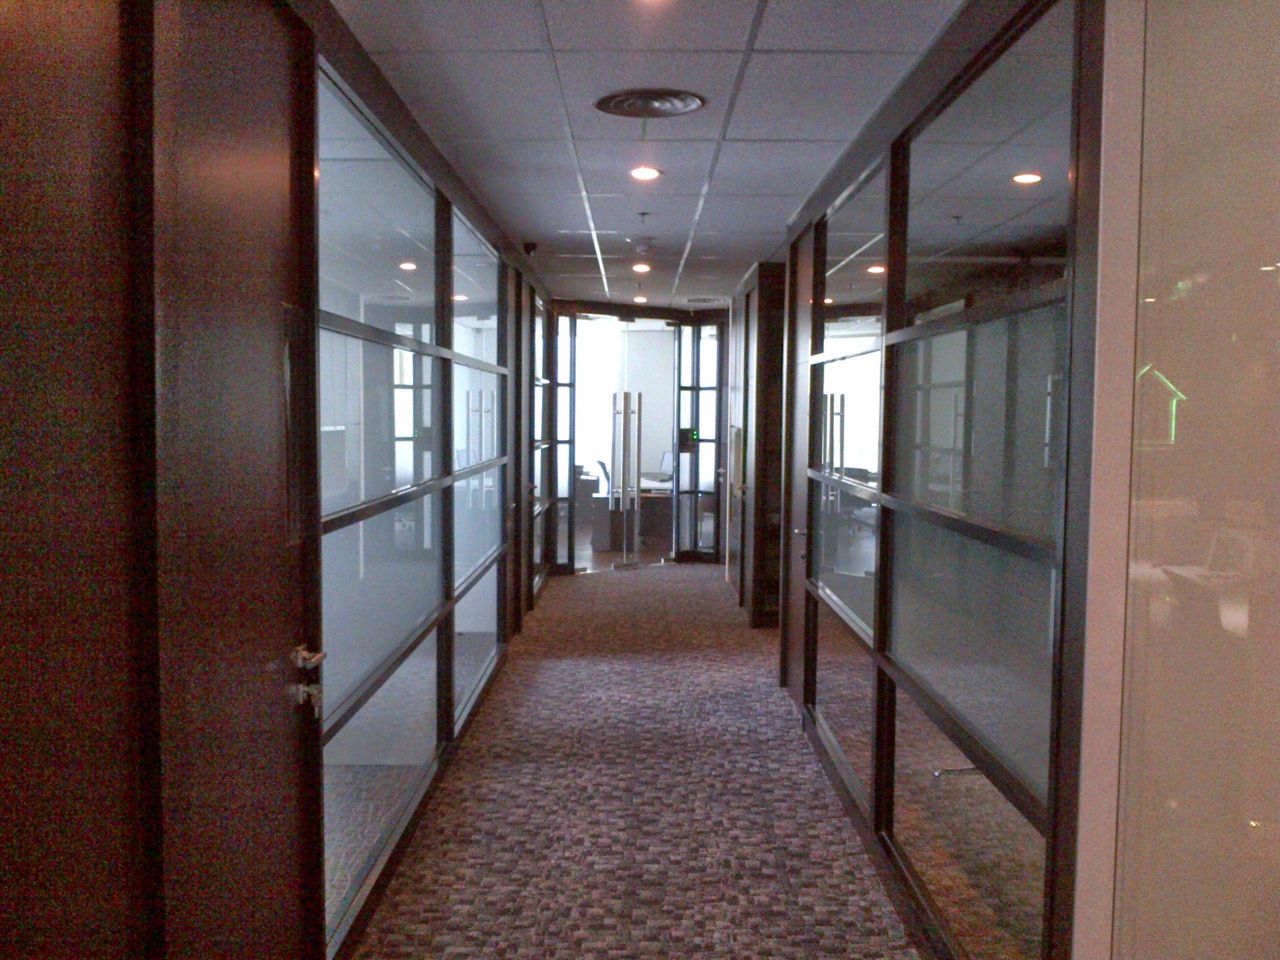 Disewakan Office Space atau Kantor di Gedung APL Tower Central Park